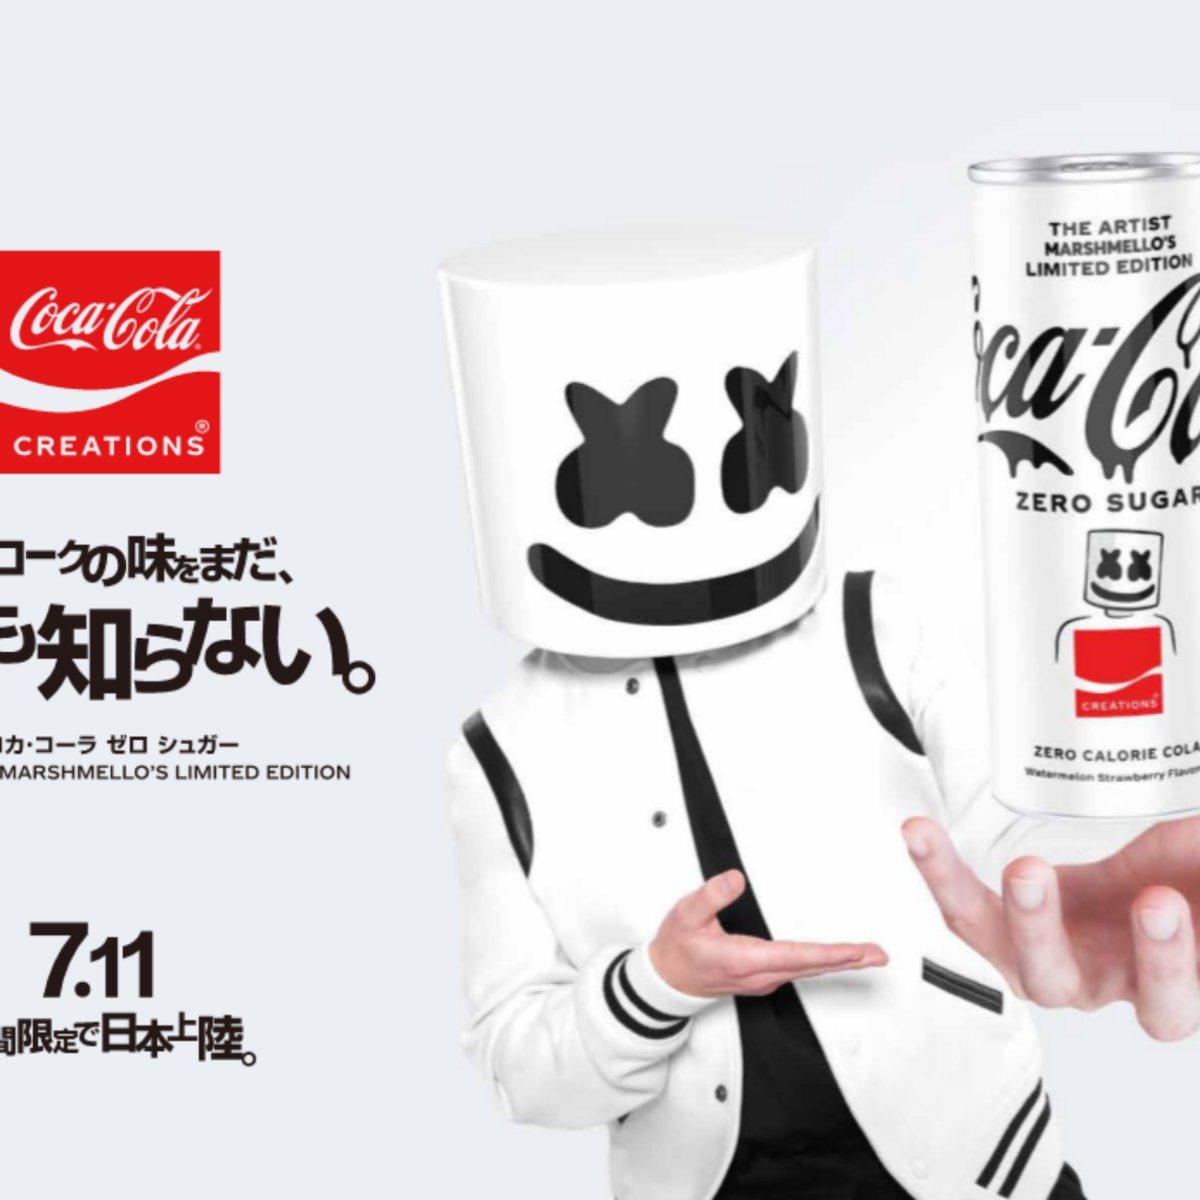 コカ・コーラ」がマシュメロとコラボ、期間限定の「コカ・コーラ ゼロシュガー」を発売